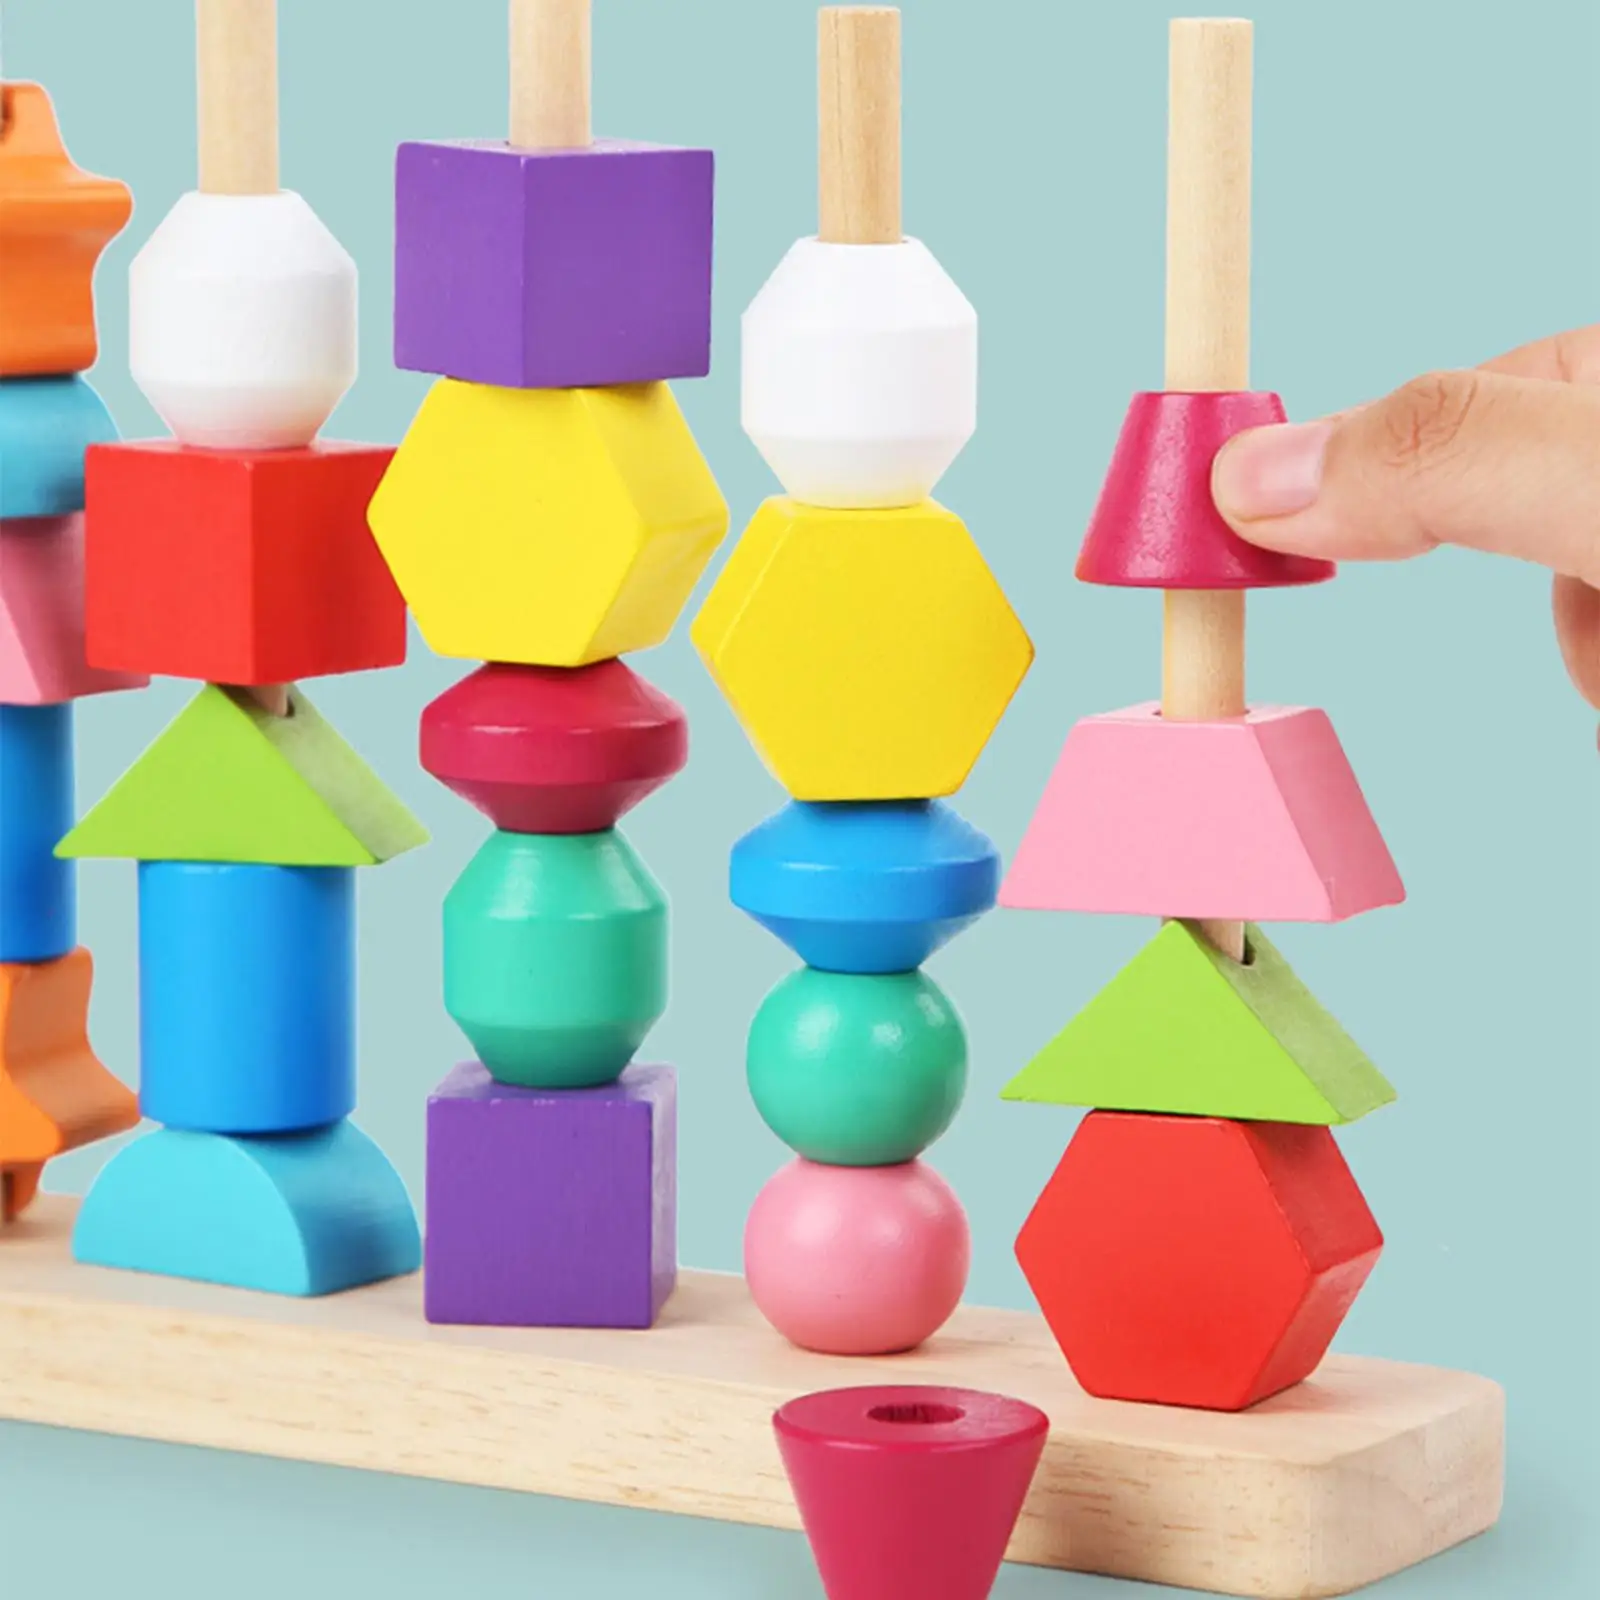 Beaded Toys Wooden Educational Enlightenment Sensory Toys for Children Kids